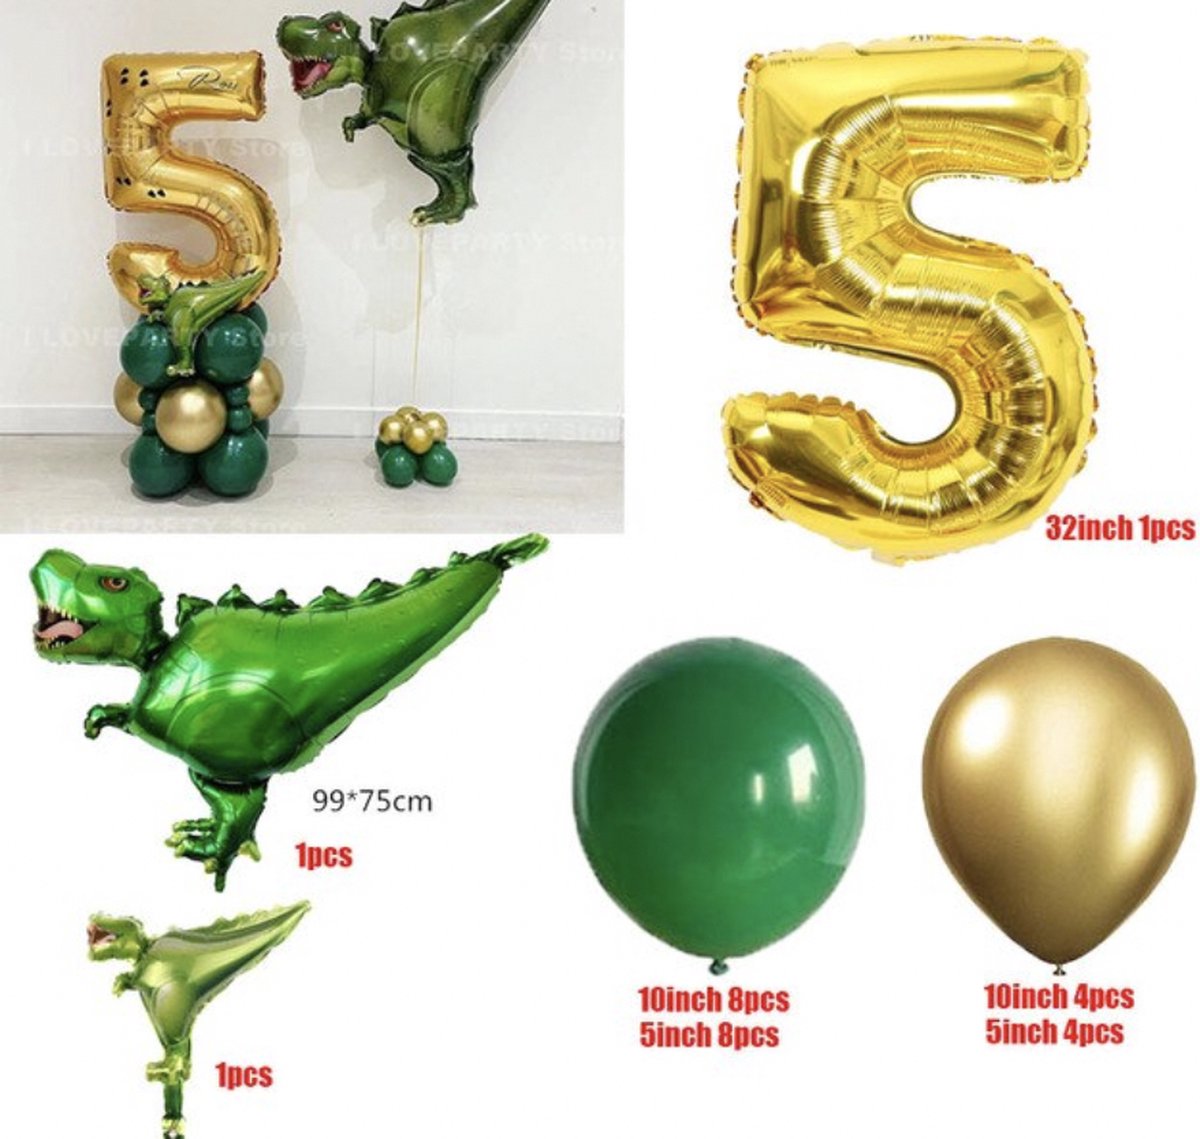 Dinosaurus Verjaardag Ballonnen - Leeftijd: 5 jaar - Dino Ballonnen Set - Feestpakket / Verjaardag Versiering - Feestversiering Thema: Dino - Themafeest - Kinder Verjaardag - Ballonnen / Folieballon / Heliumballon / Leeftijdballon